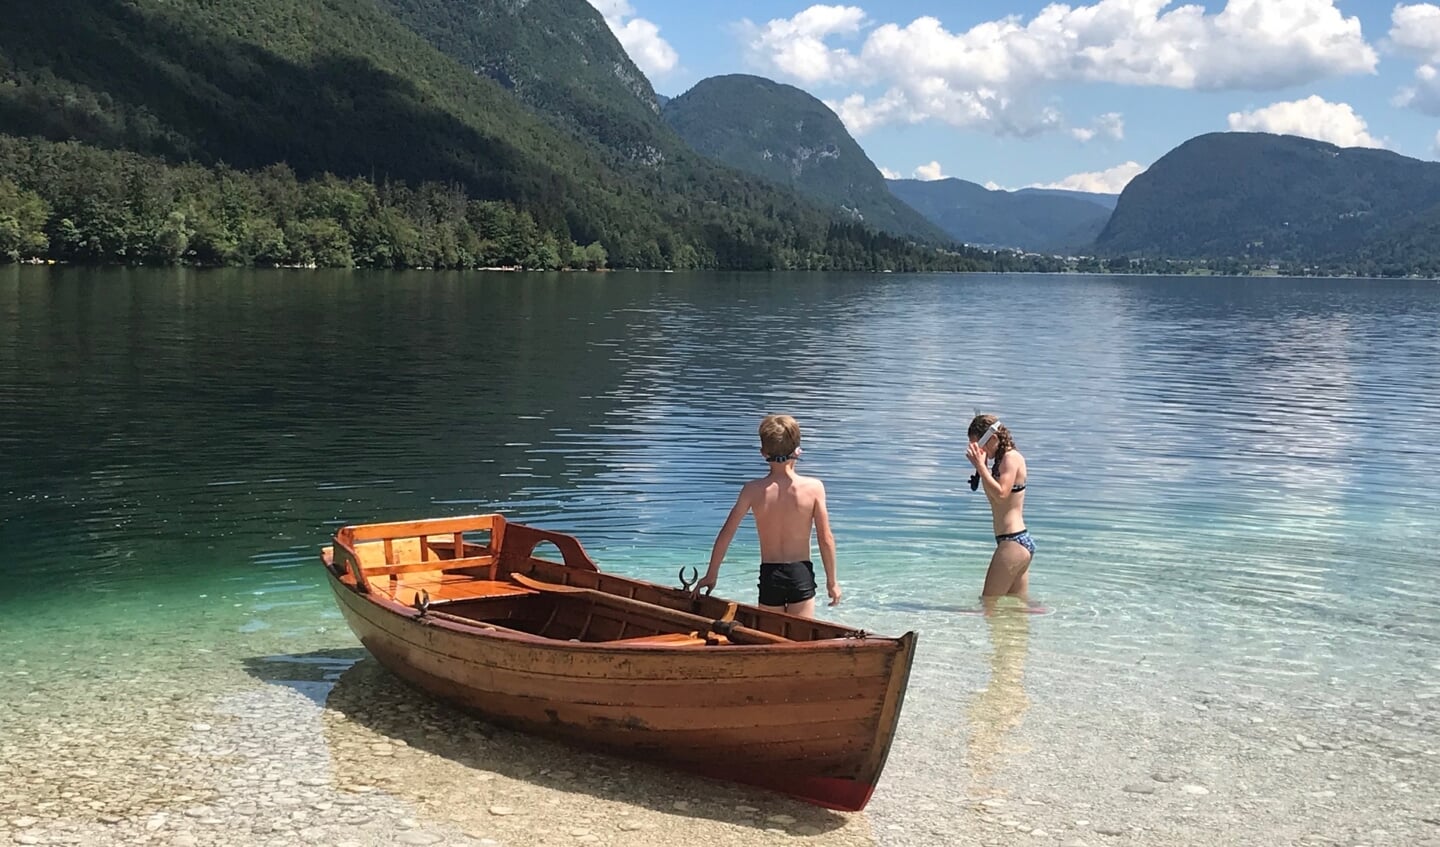 Deze foto is gemaakt in Slovenië bij het meer van Bohinj op 27 juli. Dit jaar zochten we de rustige plekken op en met de boot kwamen we terecht op een verlaten strandje. Op de foto zijn onze kinderen de vele vissen onder water aan het bekijken.